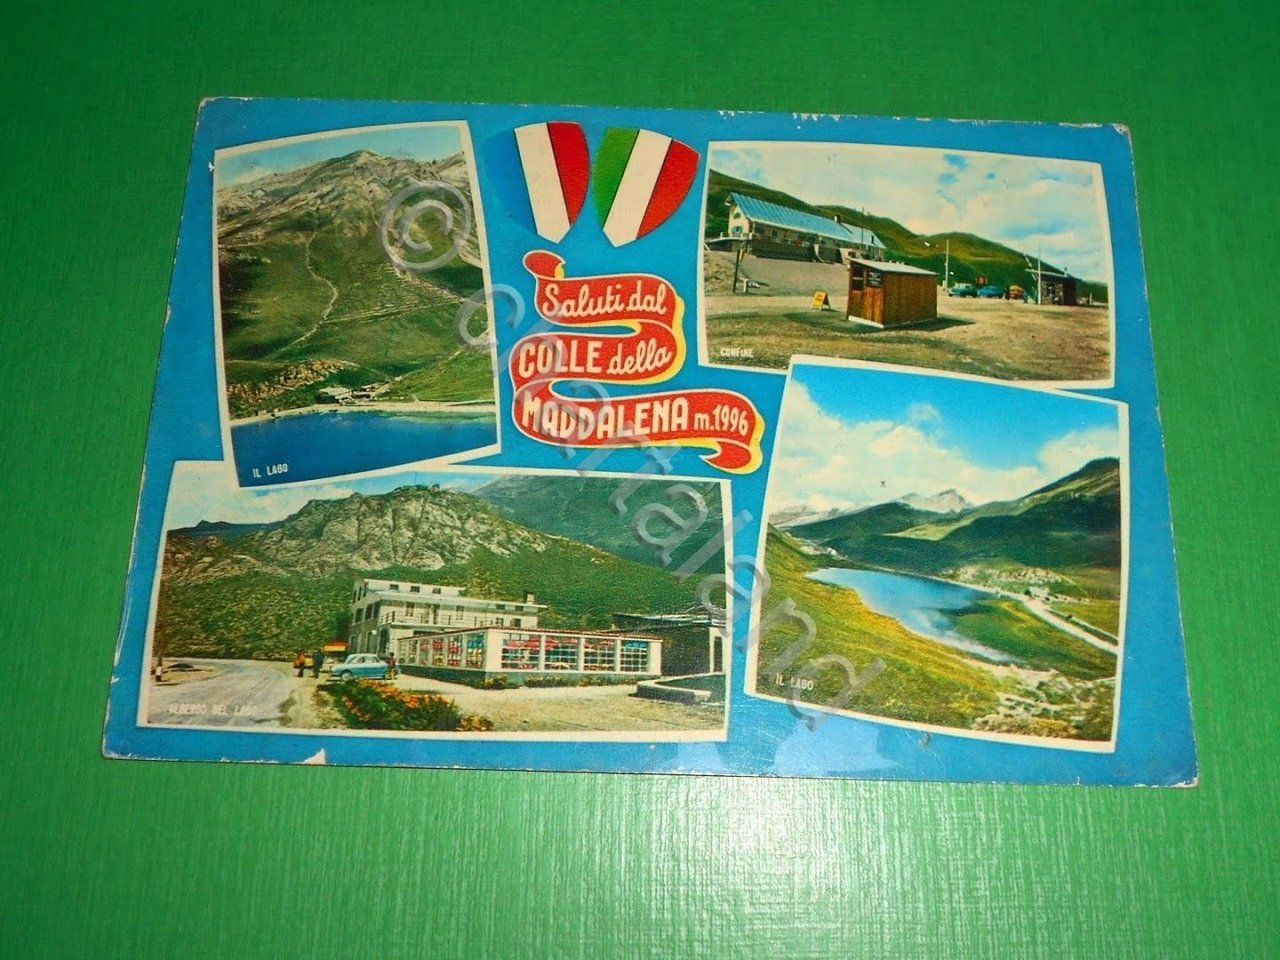 Cartolina Saluti dal Colle della Maddalena - Vedute diverse 1966.